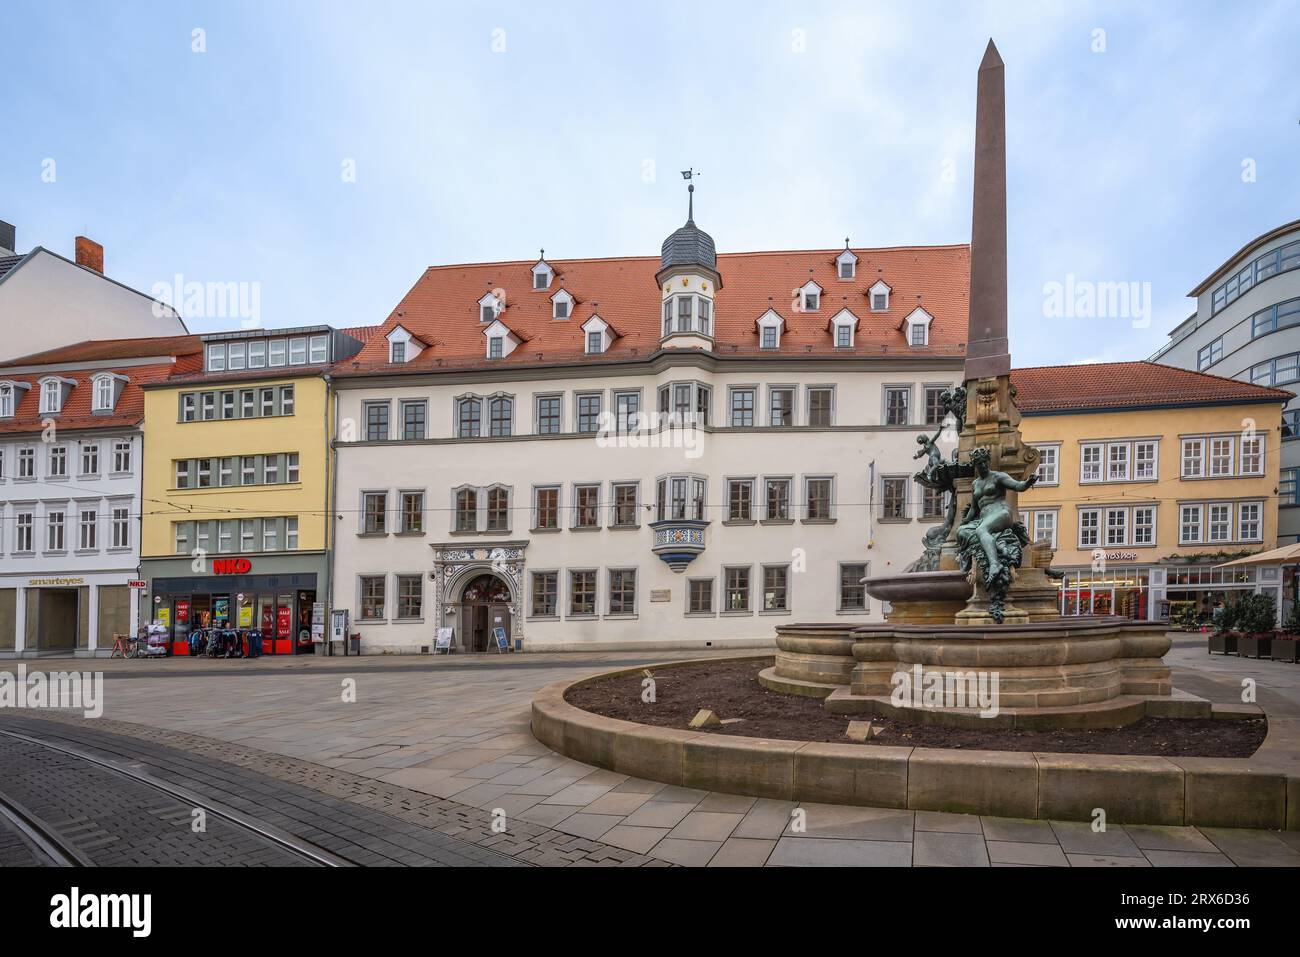 Haus Dacheroden and Anger fountain (Angerbrunnen) - Erfurt, Germany Stock Photo